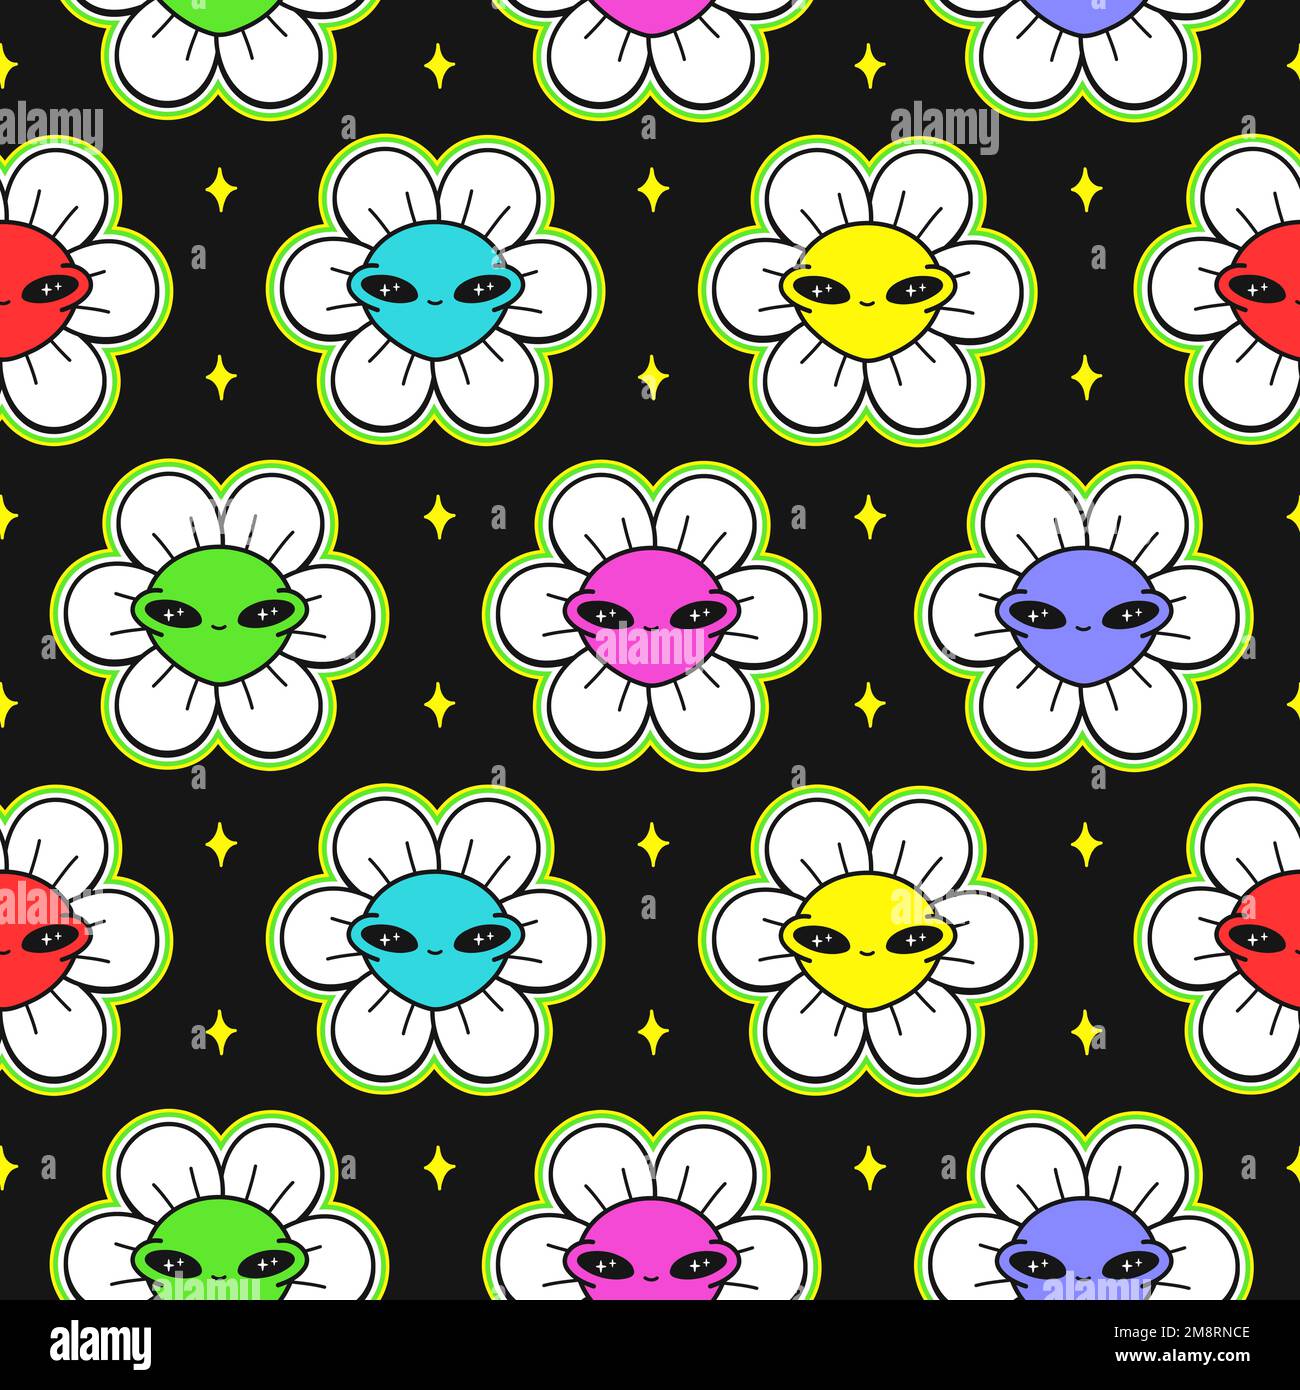 Süßes, lustiges Kawaii-Alien-Gesicht in Blüten nahtlose Musterkunst. Vektor-Cartoon Kawaii-Figur-Illustrationsdesign. Positives Vintage-Lächeln, Alien, Blütenmuster-Konzept Stock Vektor